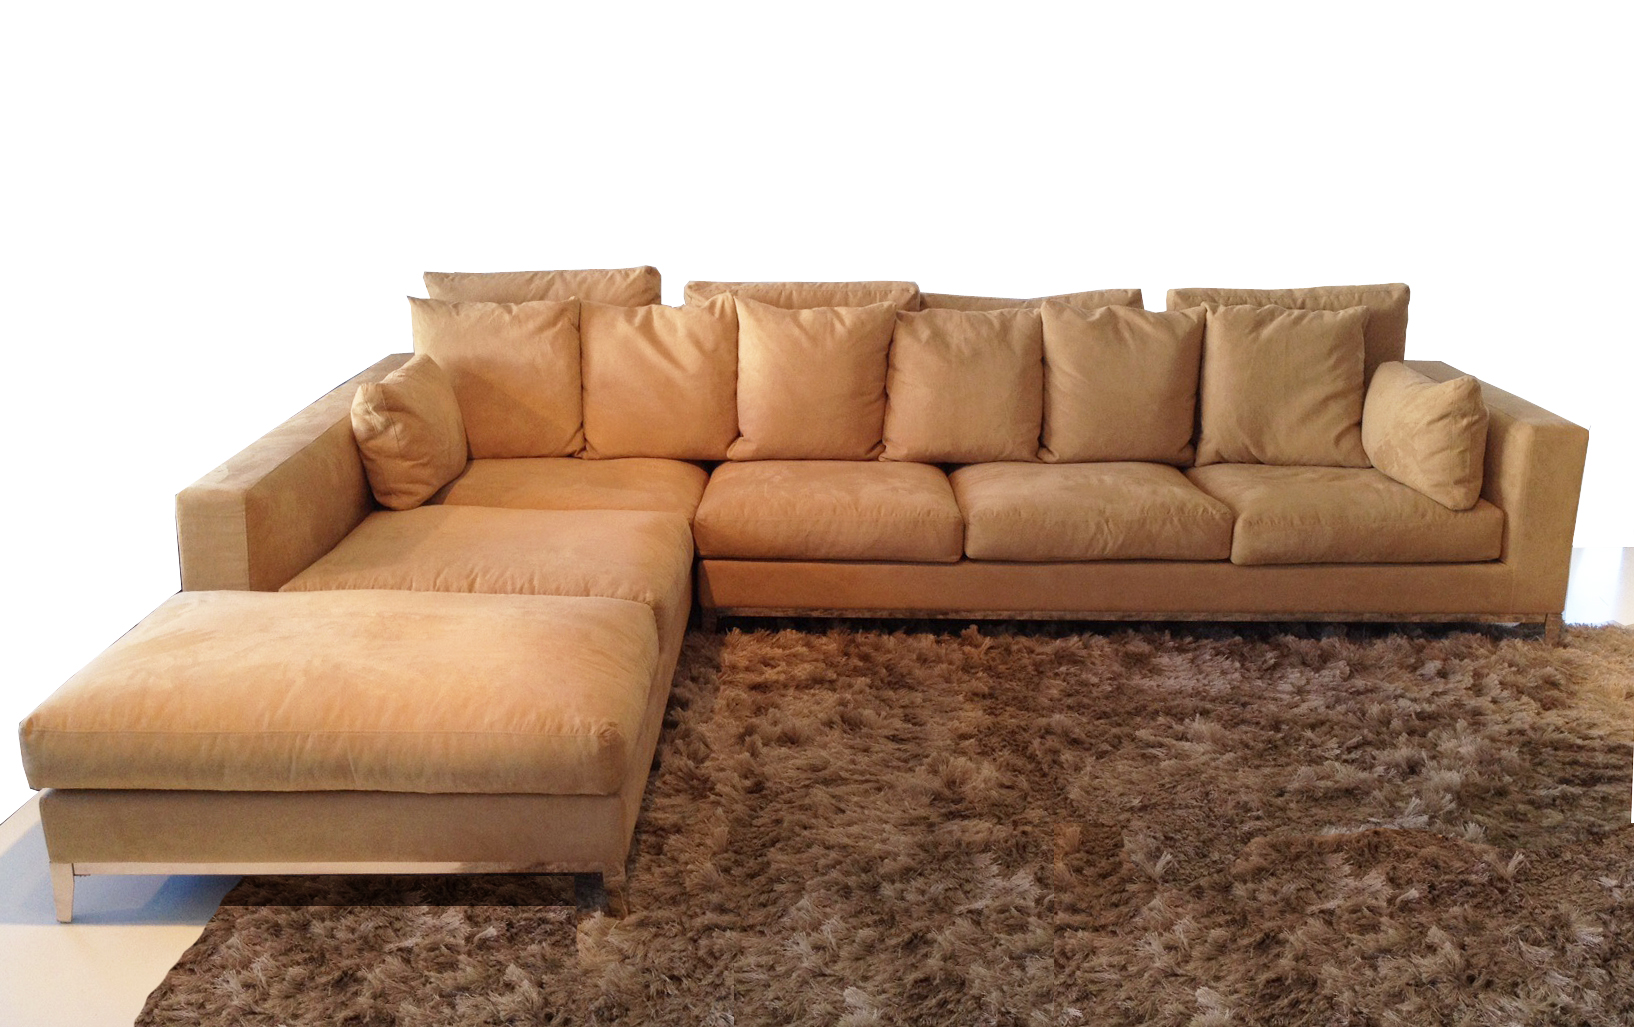 extra large sectional sleeper sofa photo - 4